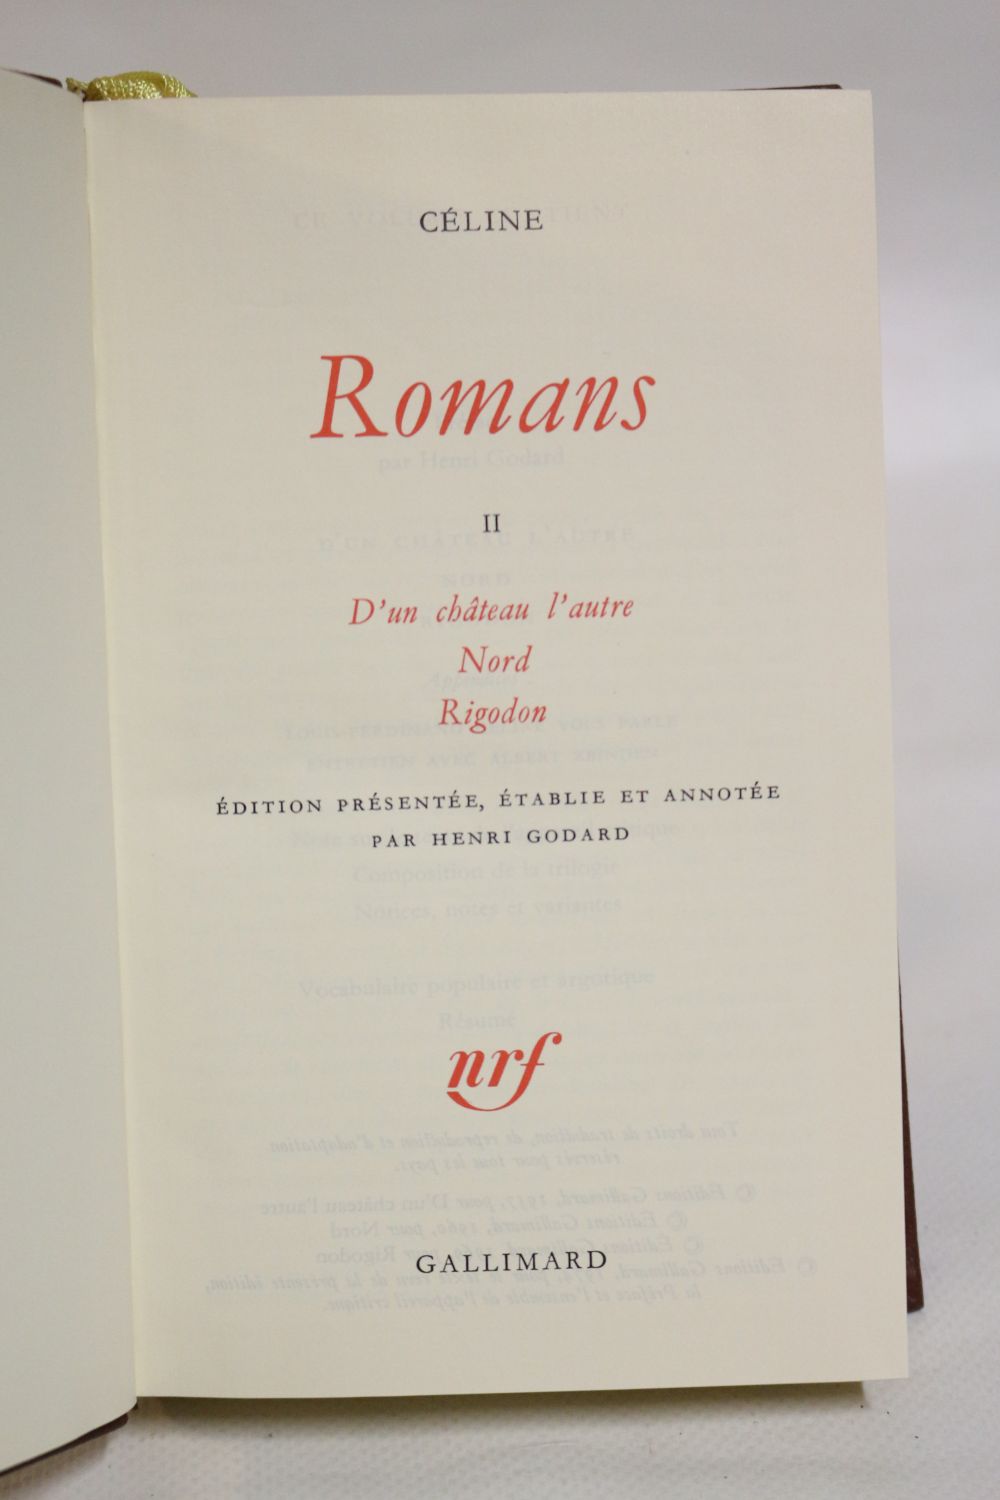 CELINE : Romans. Tome II: D'un château l'autre, Nord, Rigodon 